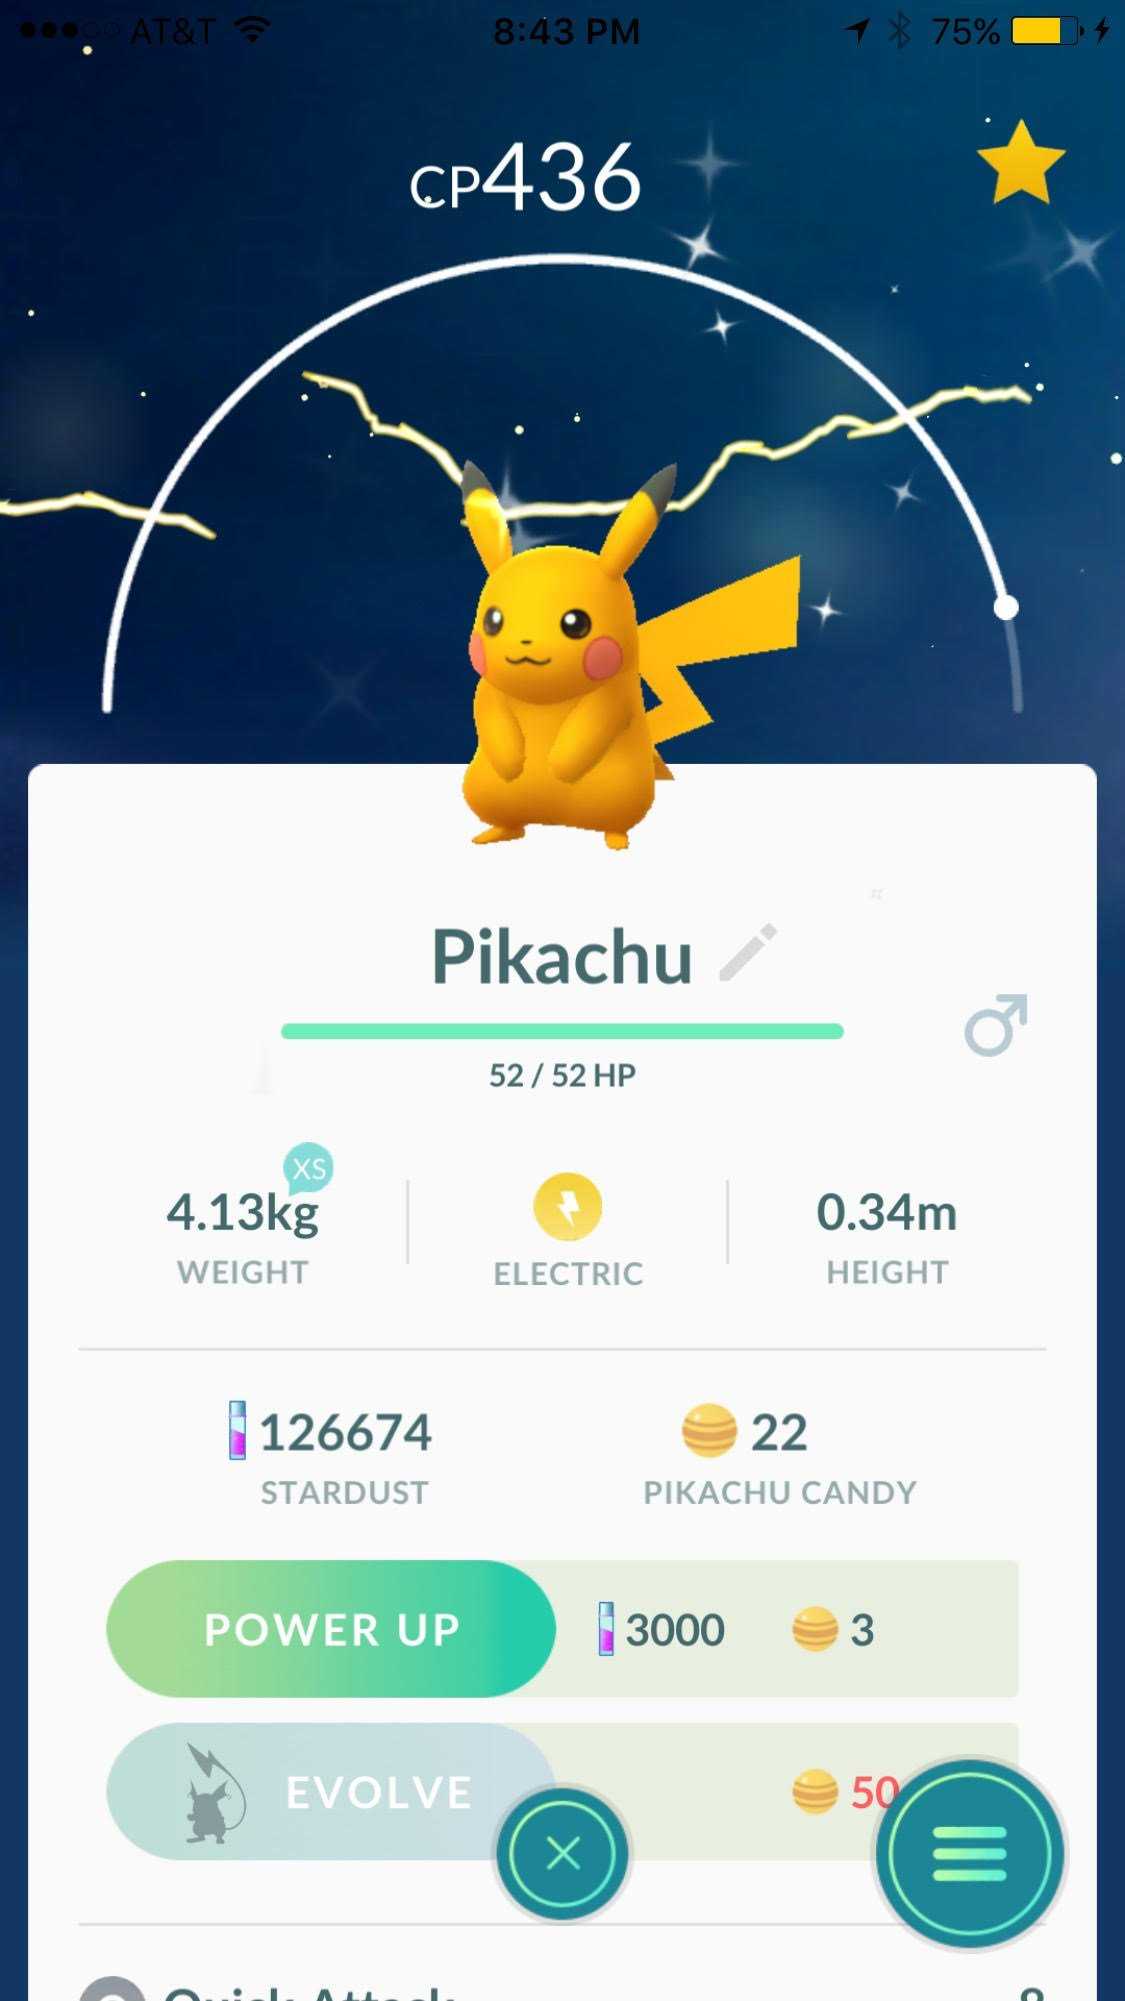 What does a shiny pikachu look like?